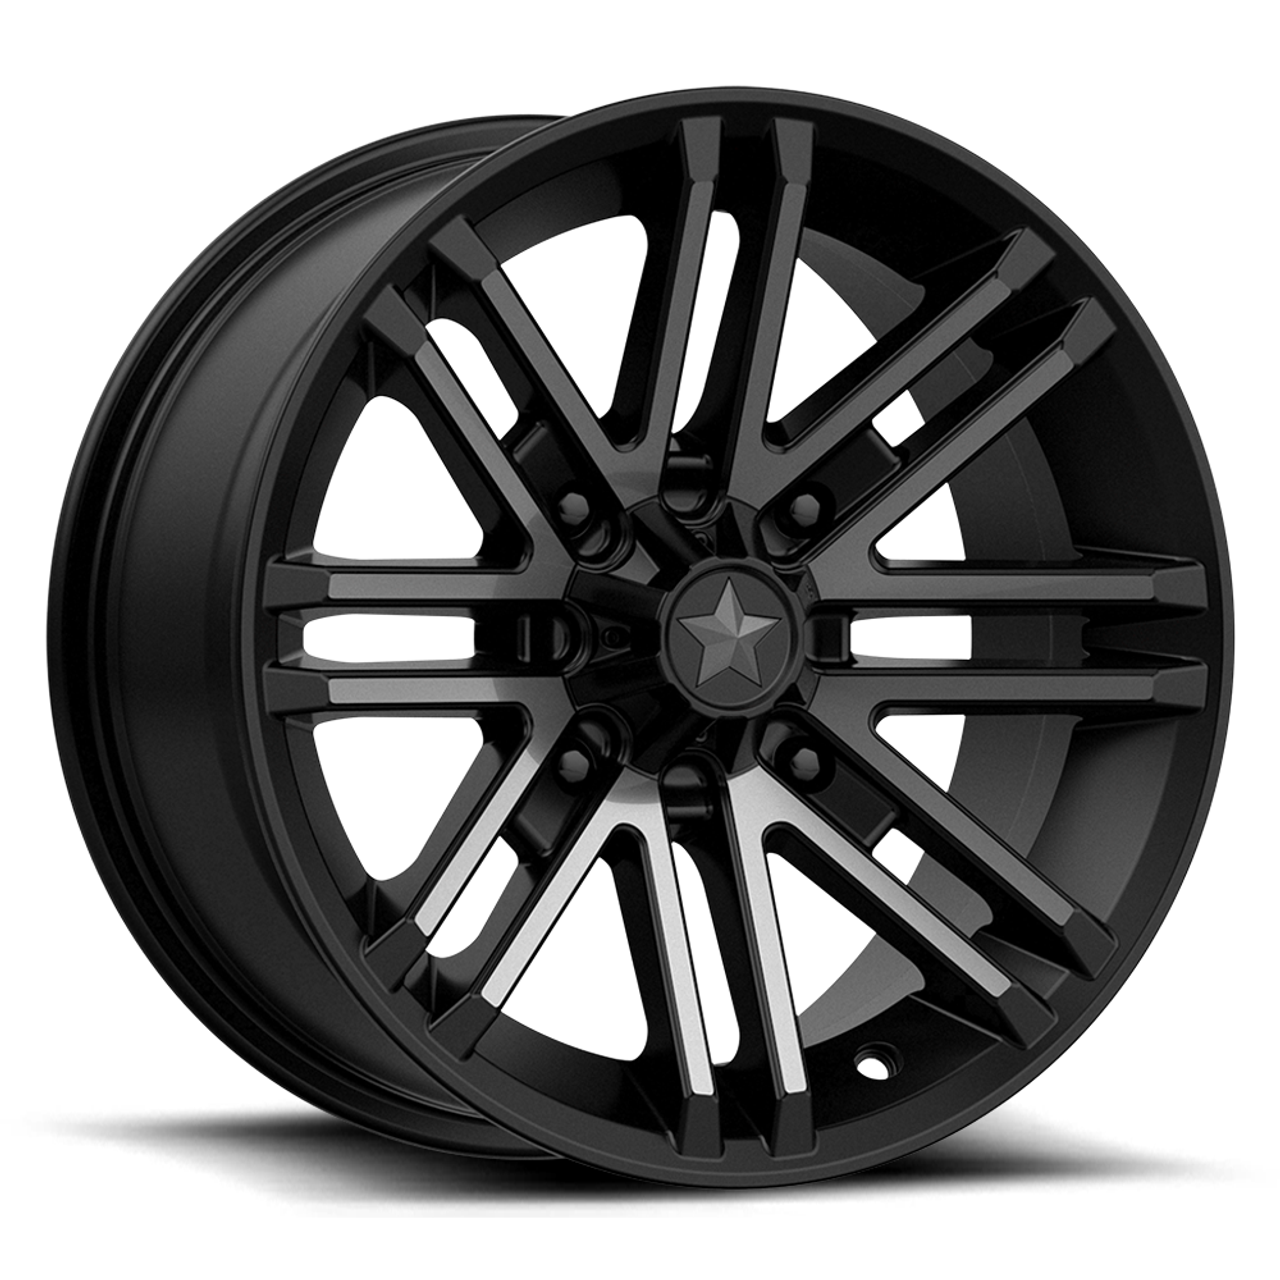 MSA Offroad Wheels M40 Rogue 14x7 4x110 Satin Black Titanium Tint Wheel 14" 10mm